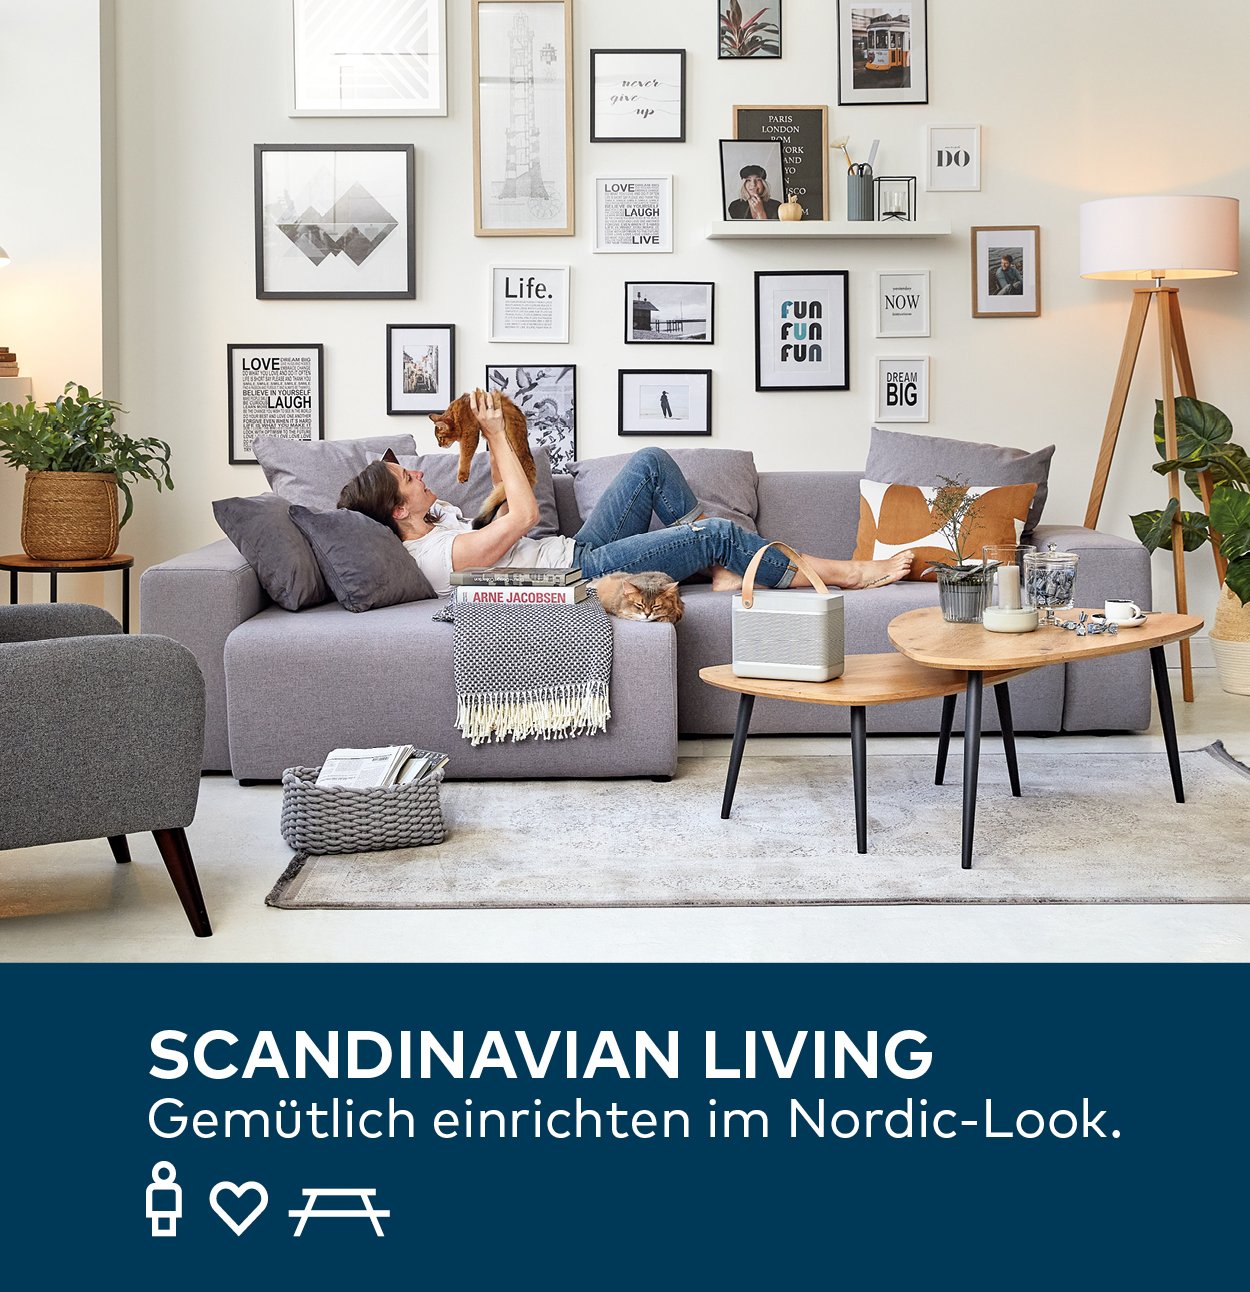 Porta De Scandinavian Living Gemtlich einrichten im Nordic Look ...